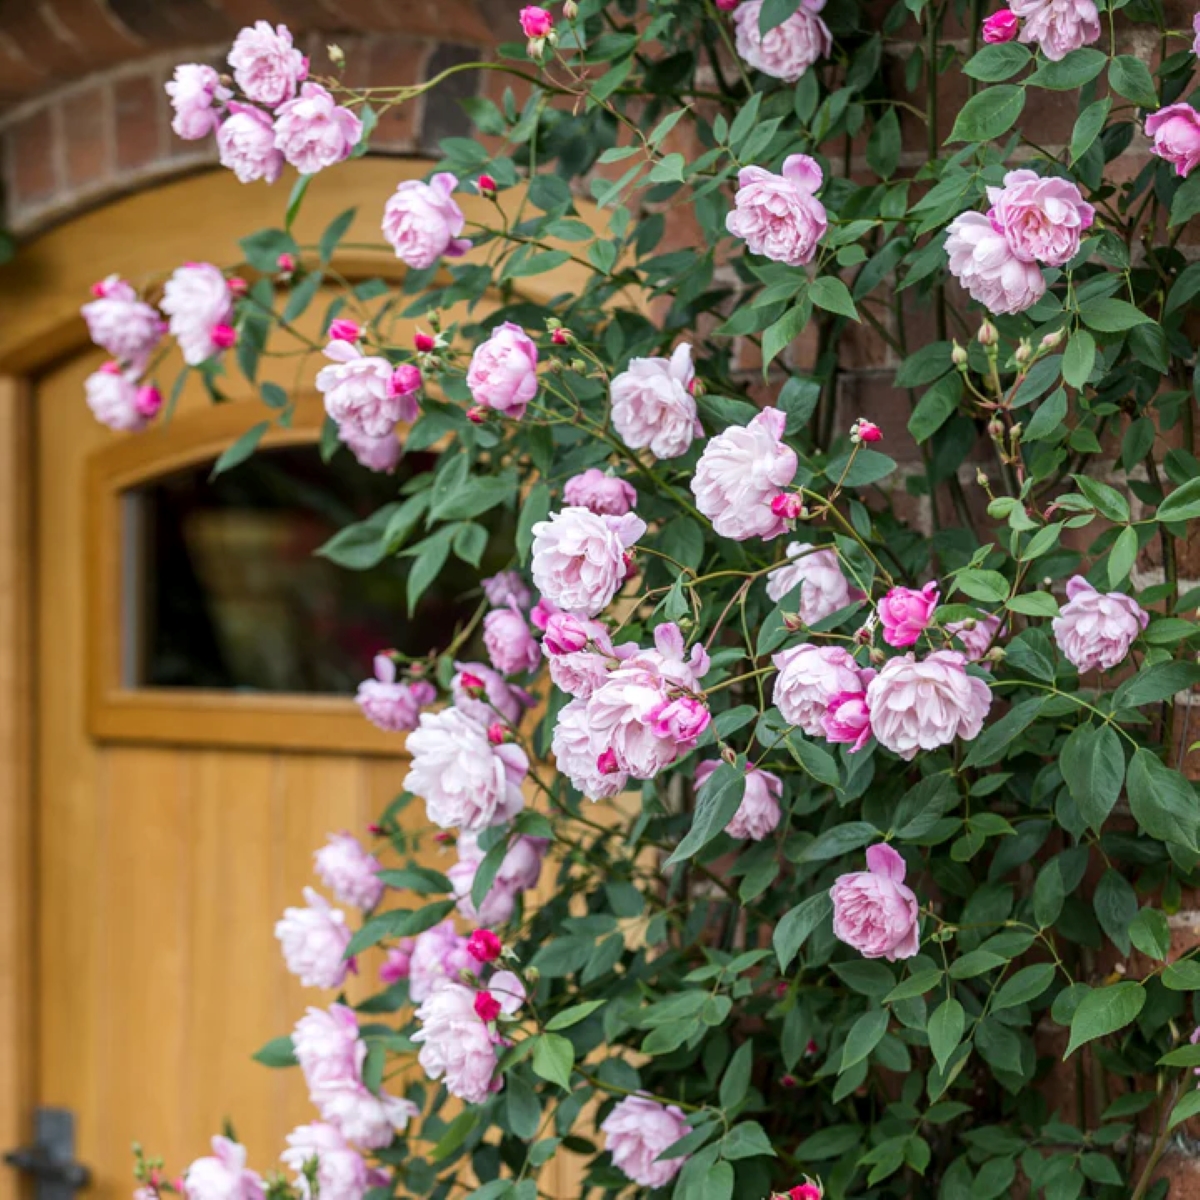 Pink roses climbing near door